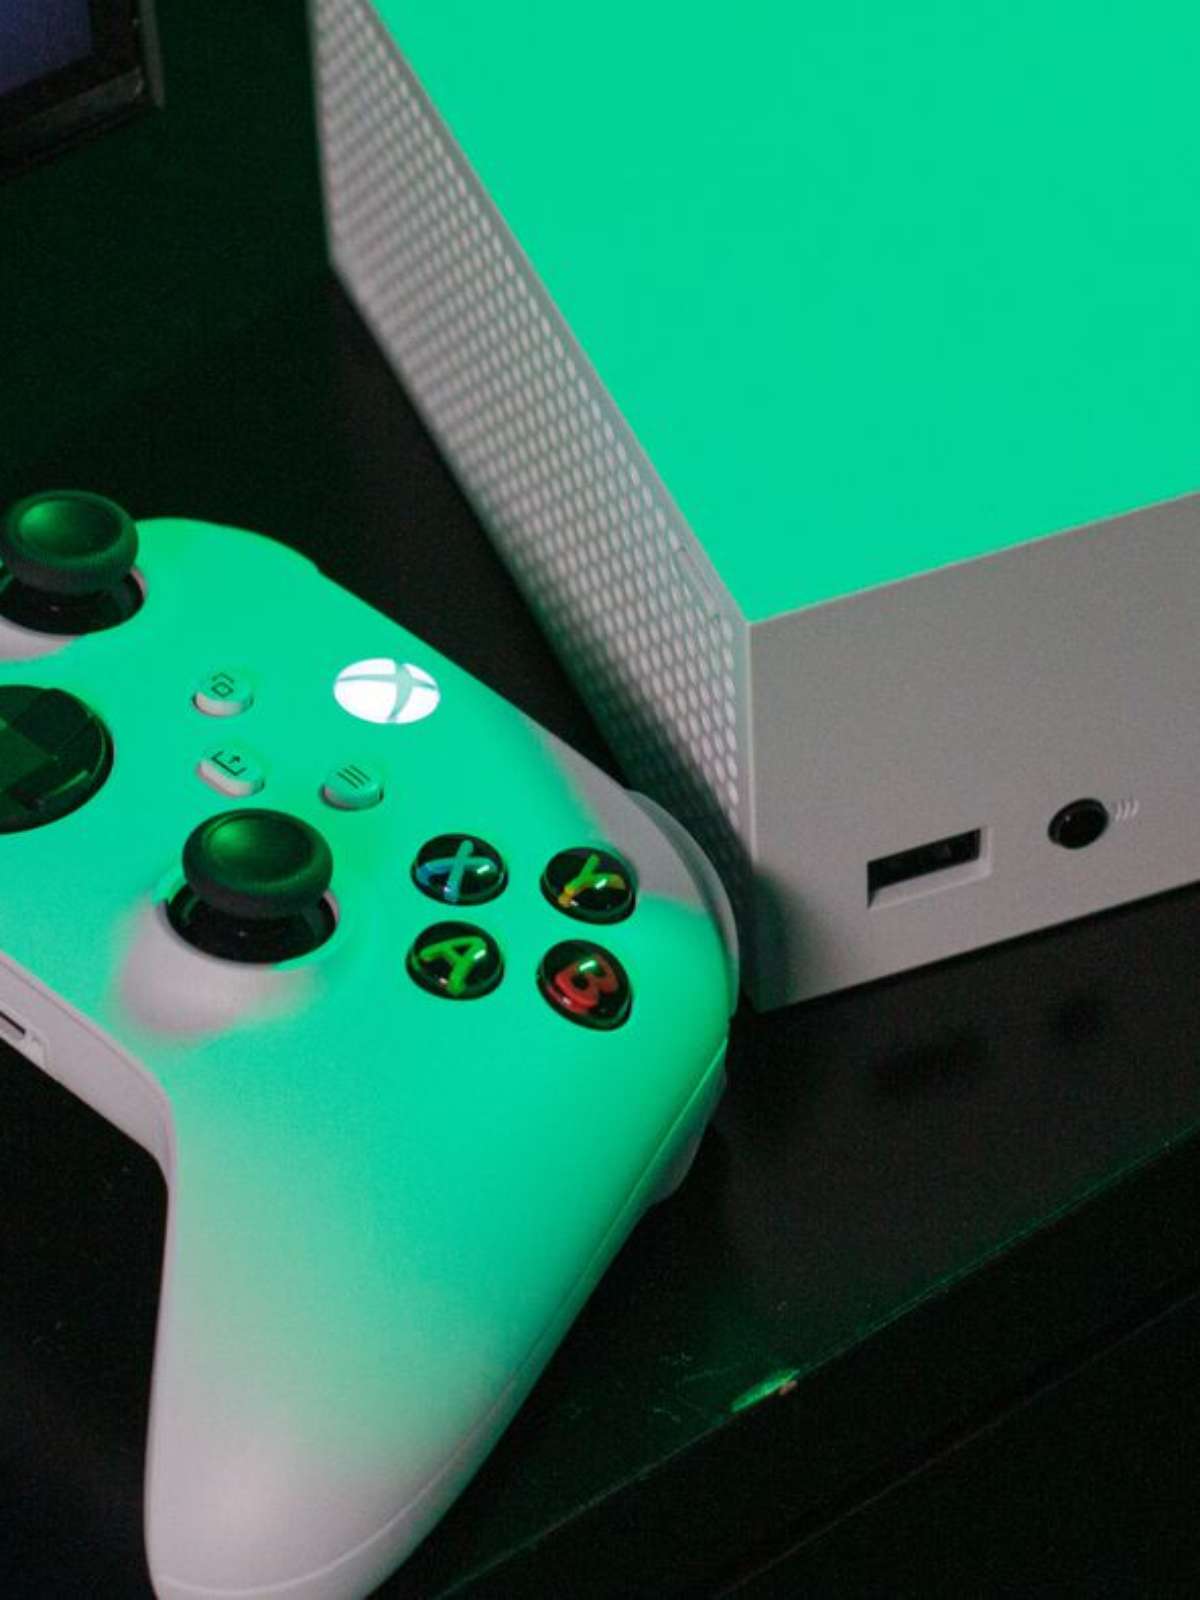 Xbox Game Pass recebe quase 100 jogos em lançamento de novo console -  Canaltech